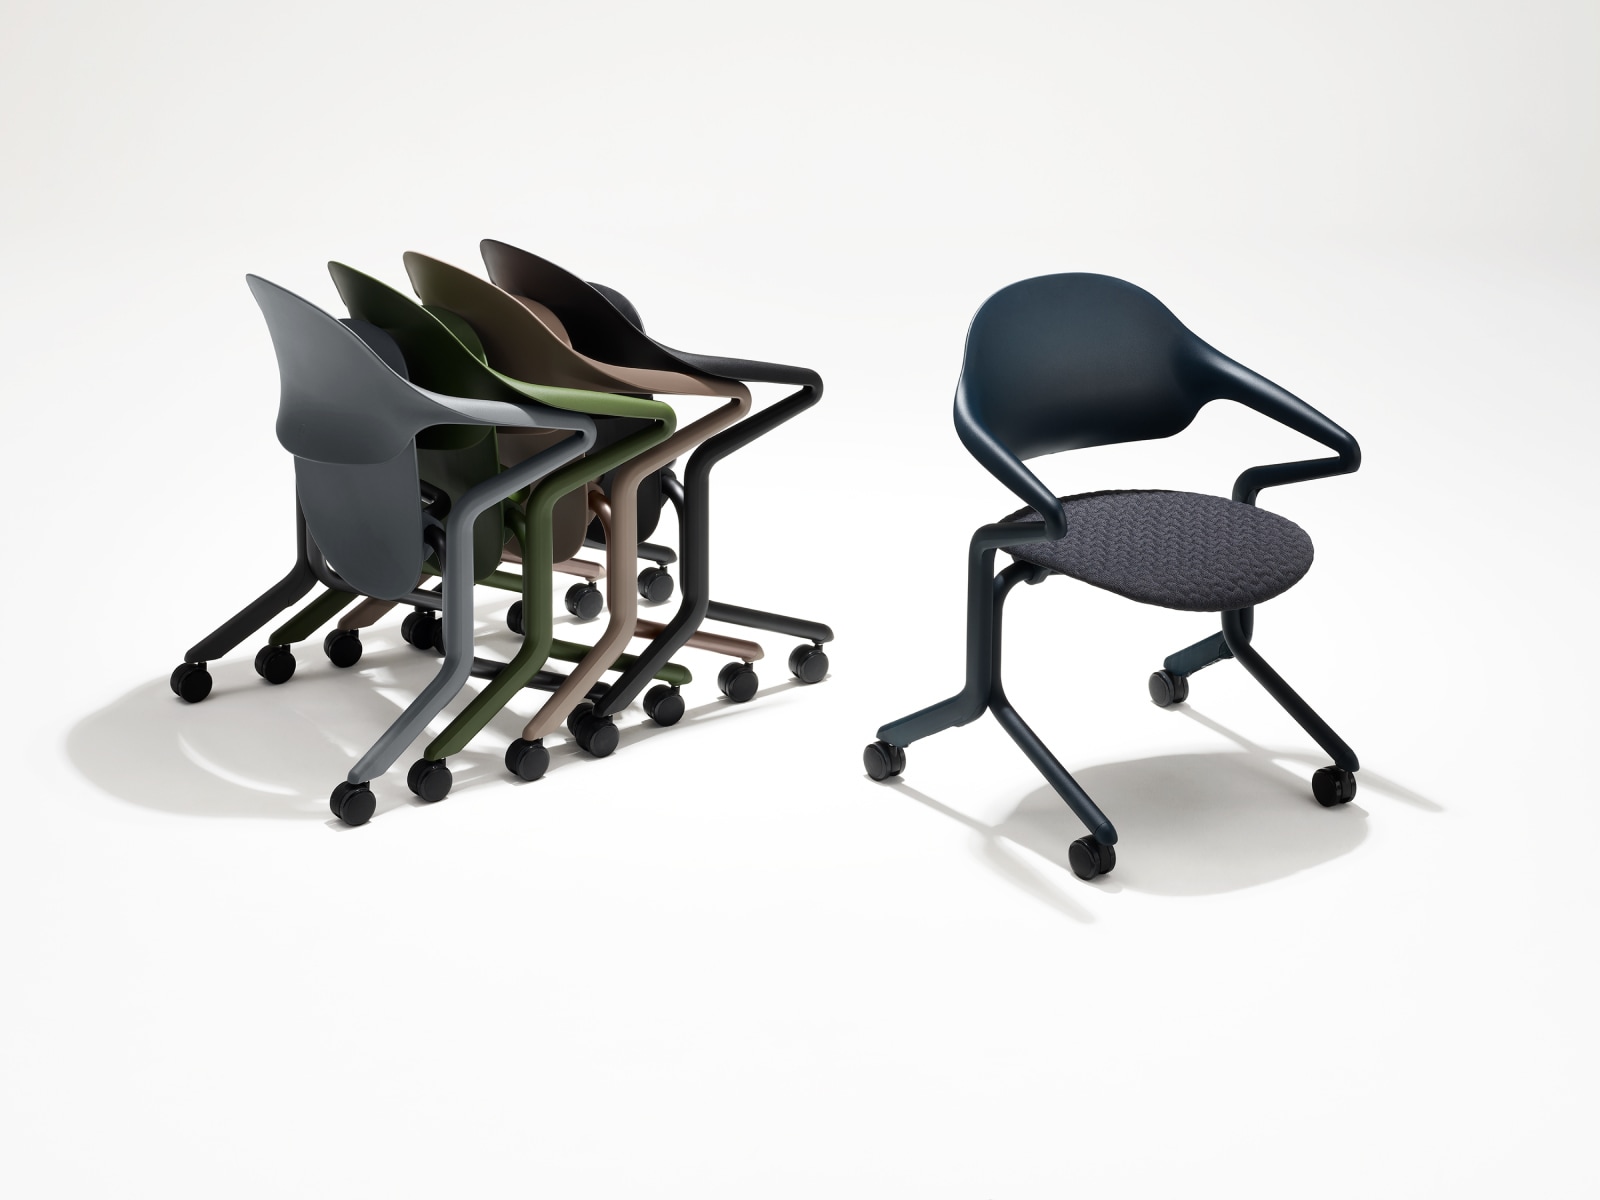 Vier zusammengesteckte Fuld Stühle mit verschiedenen Farben und Oberflächen in einer Gruppe neben einem einzelnen Fuld Stuhl in Nightfall mit dem 3D-Knit Material.